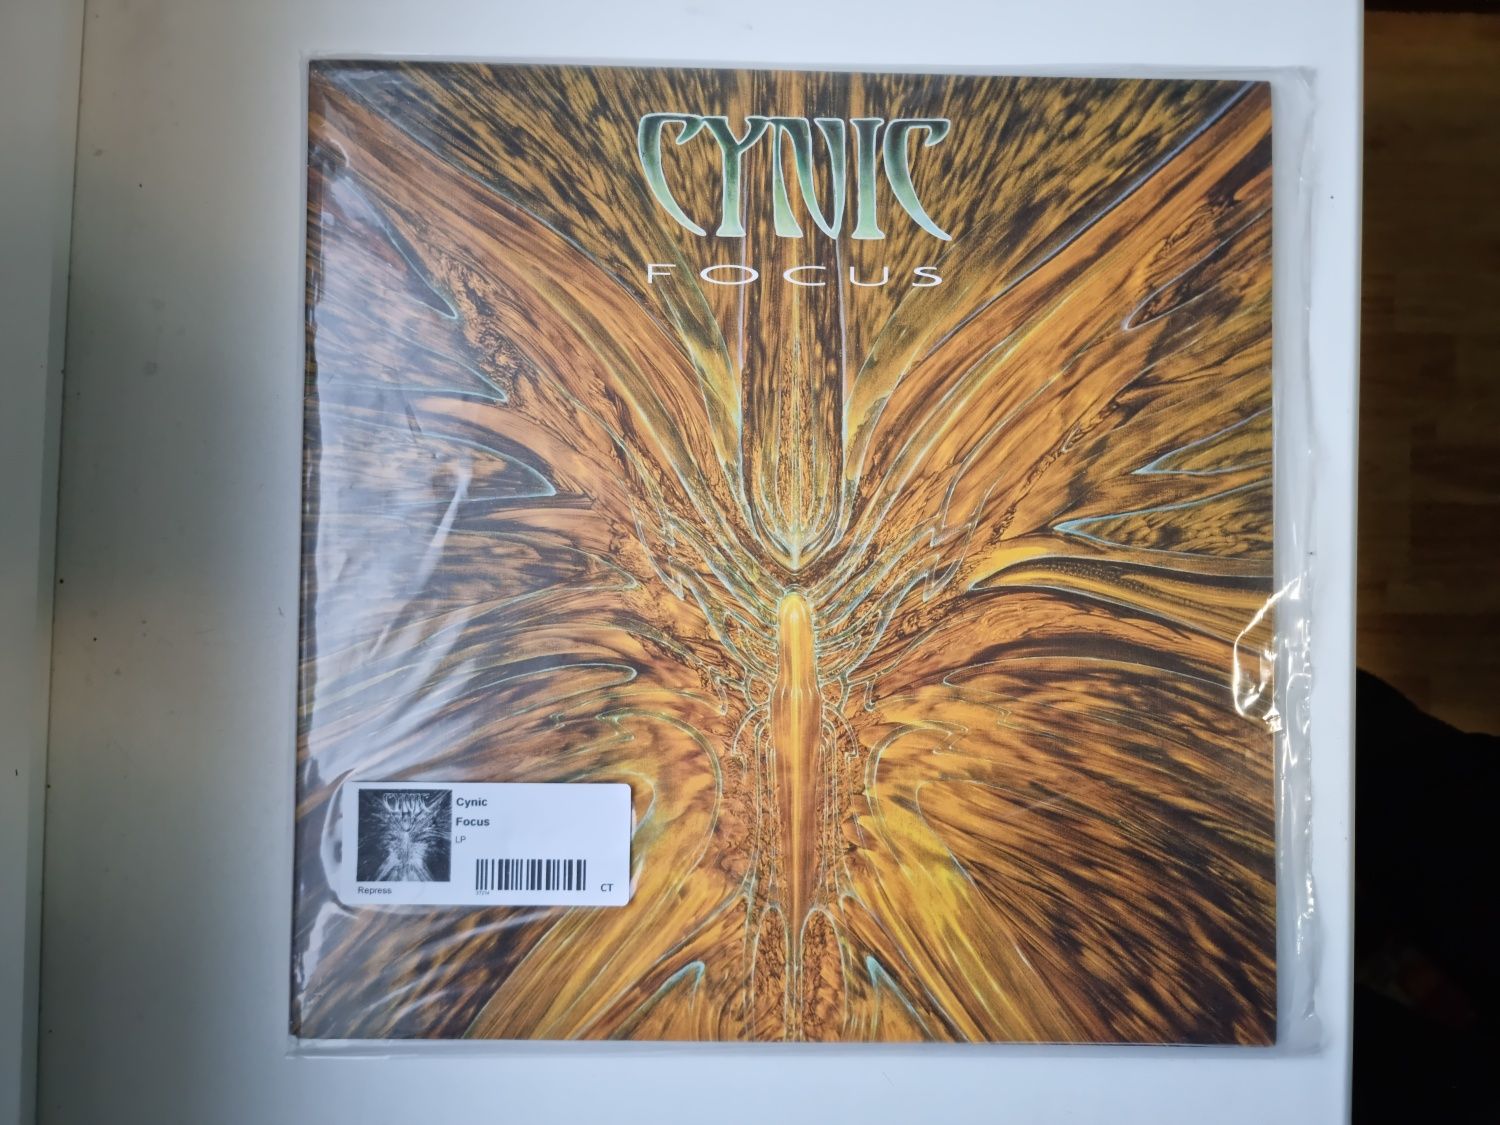 Cynic  – Focus vinyl